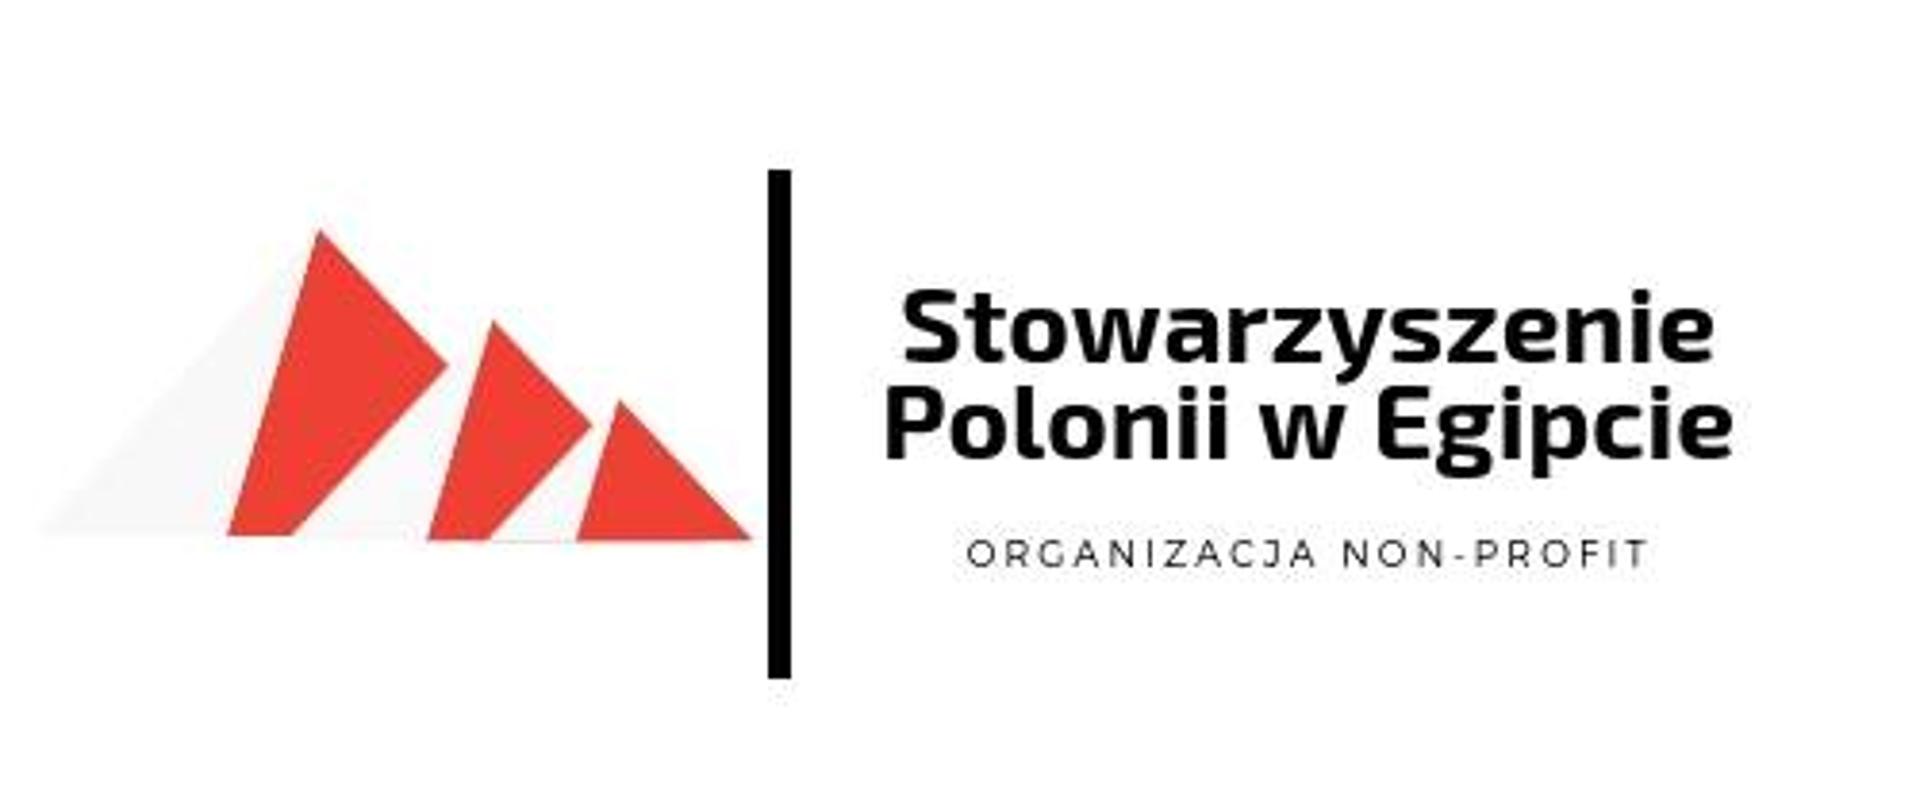 Stowarzyszenie Polonii w Egipcie